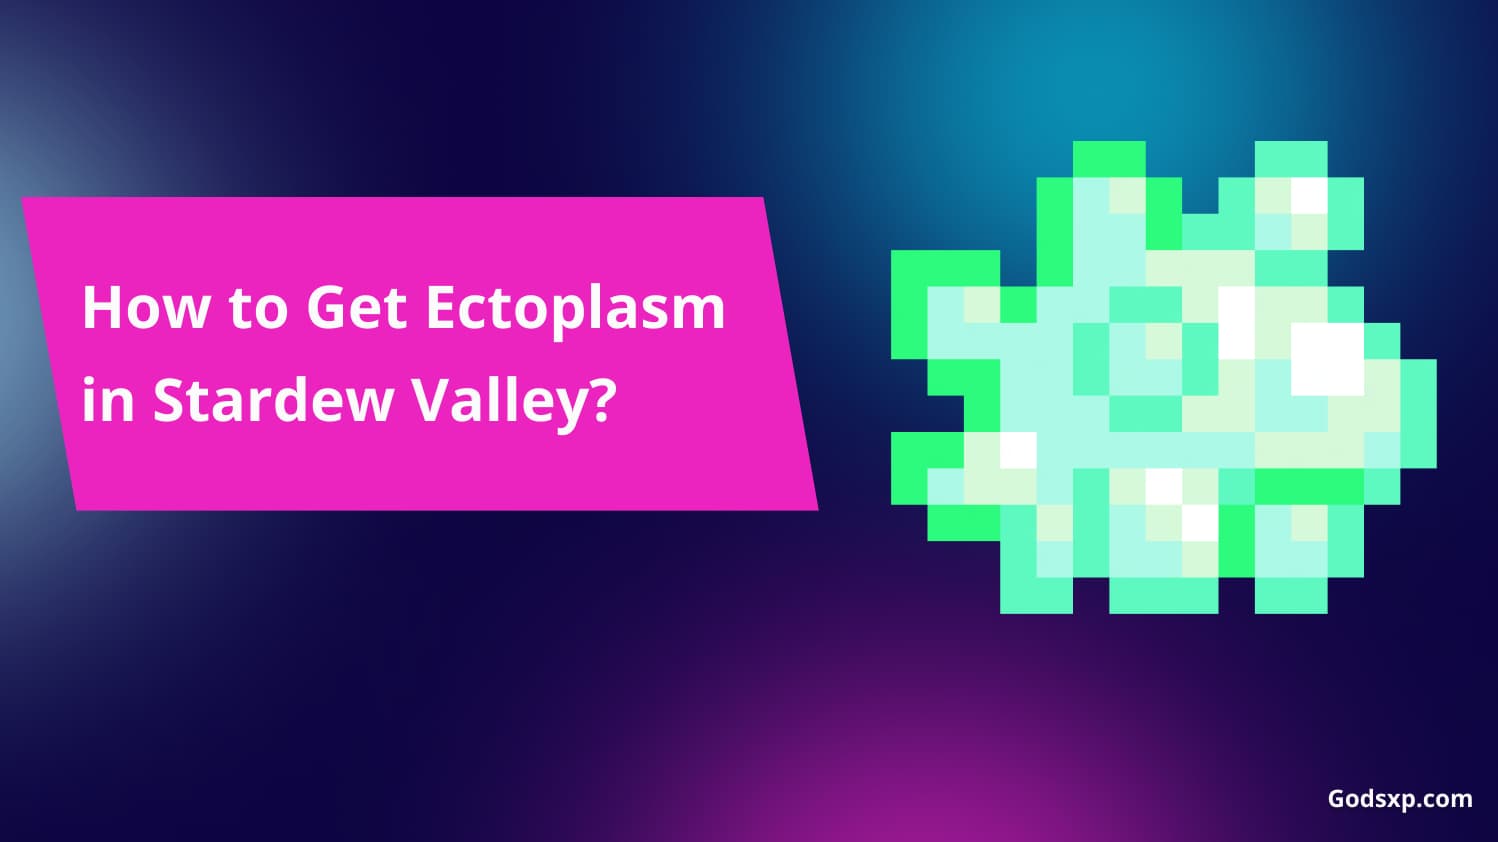 Get Ectoplasm in Stardew Valley